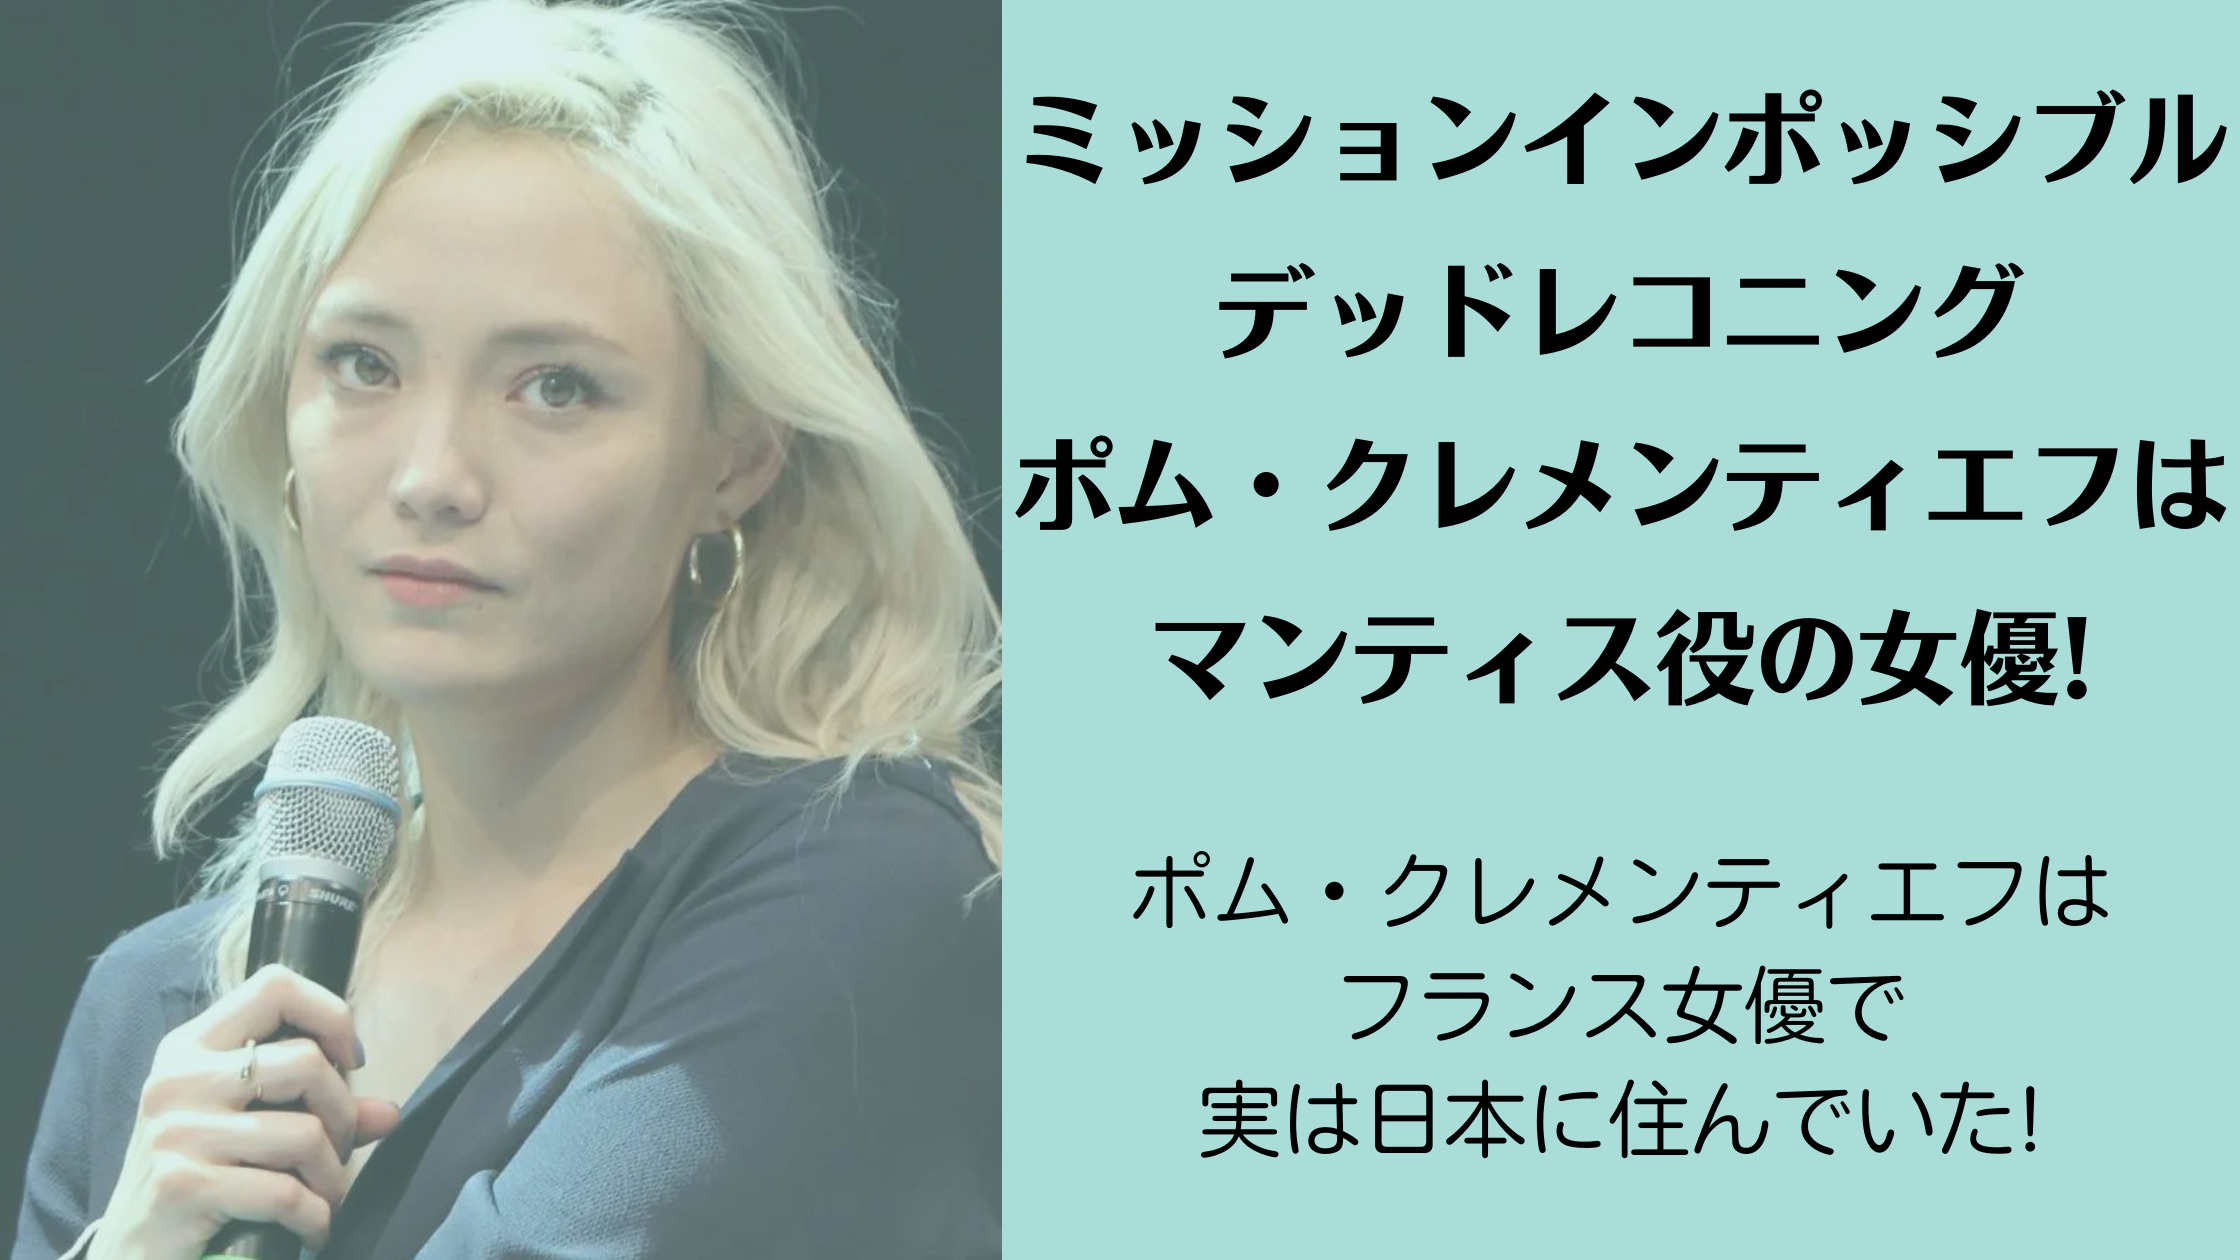 MIPデッドレコニングのポム・クレメンティエフはマンティス役の女優!実は日本に住んでいた!